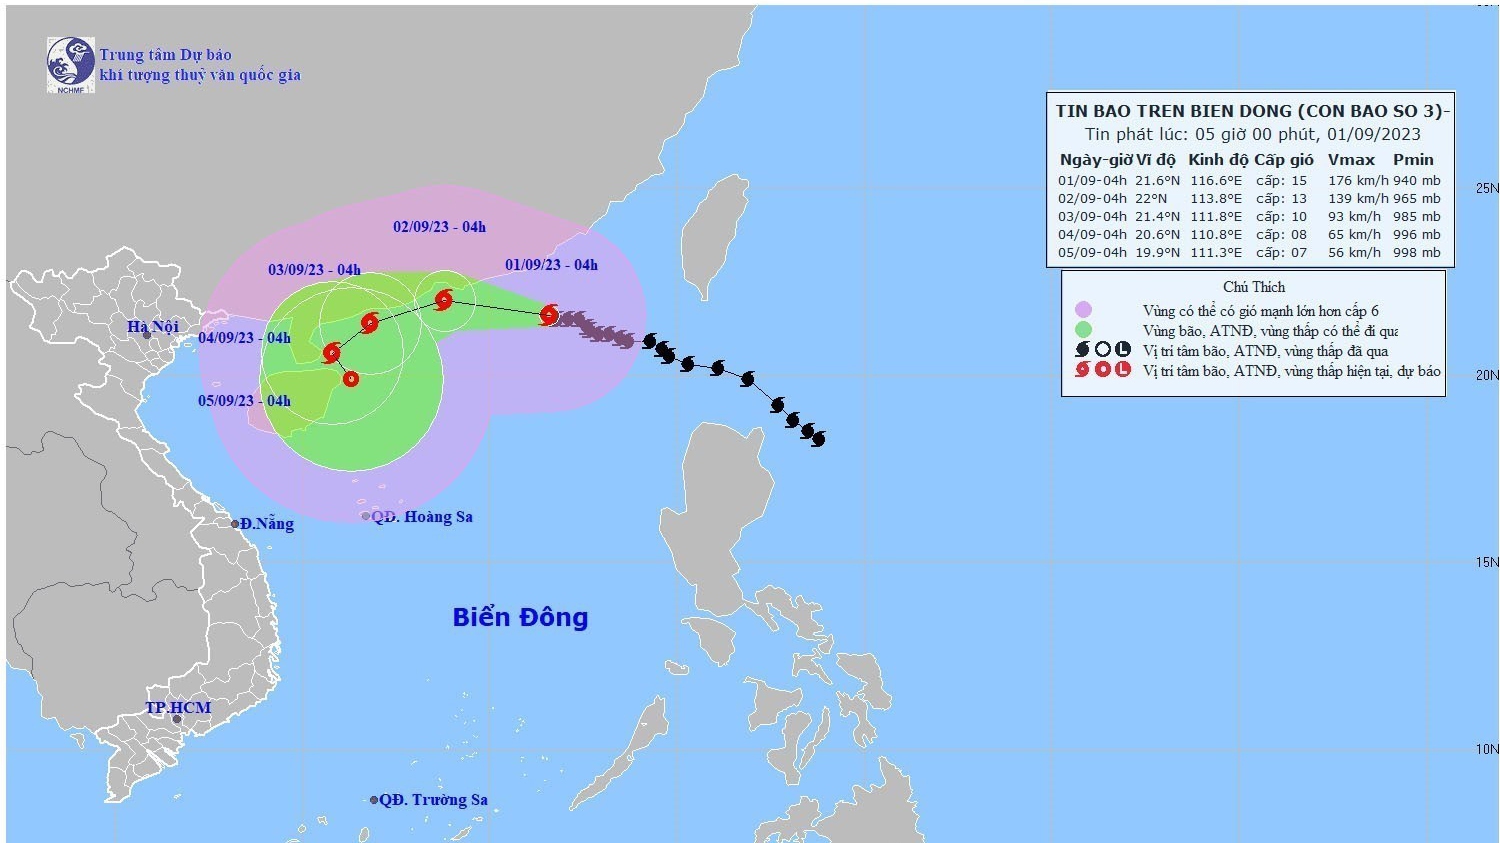 Khả năng xuất hiện từ 2 - 3 cơn bão và áp thấp nhiệt đới ảnh hưởng đến Bắc Bộ, Bắc Trung Bộ